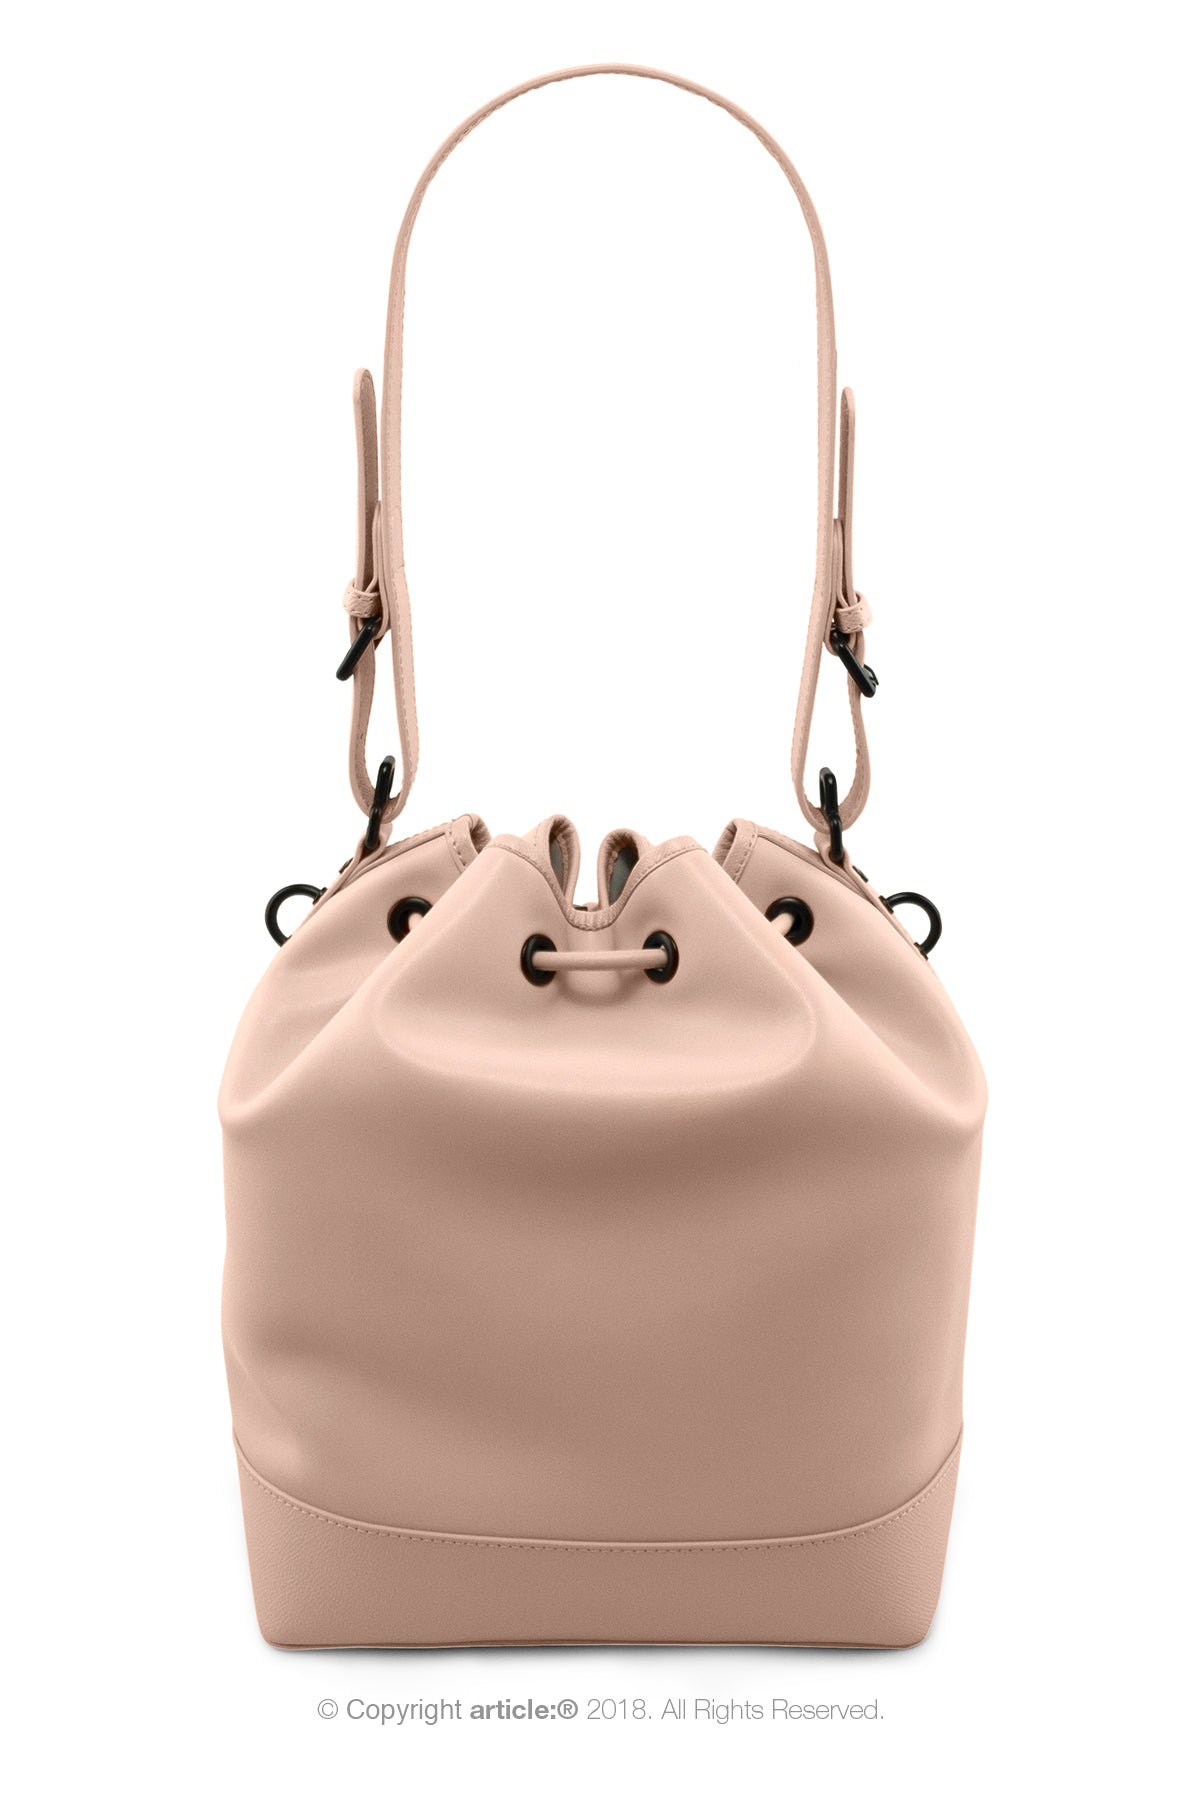 article: #120 Handbag Grande Bucket - Ballet